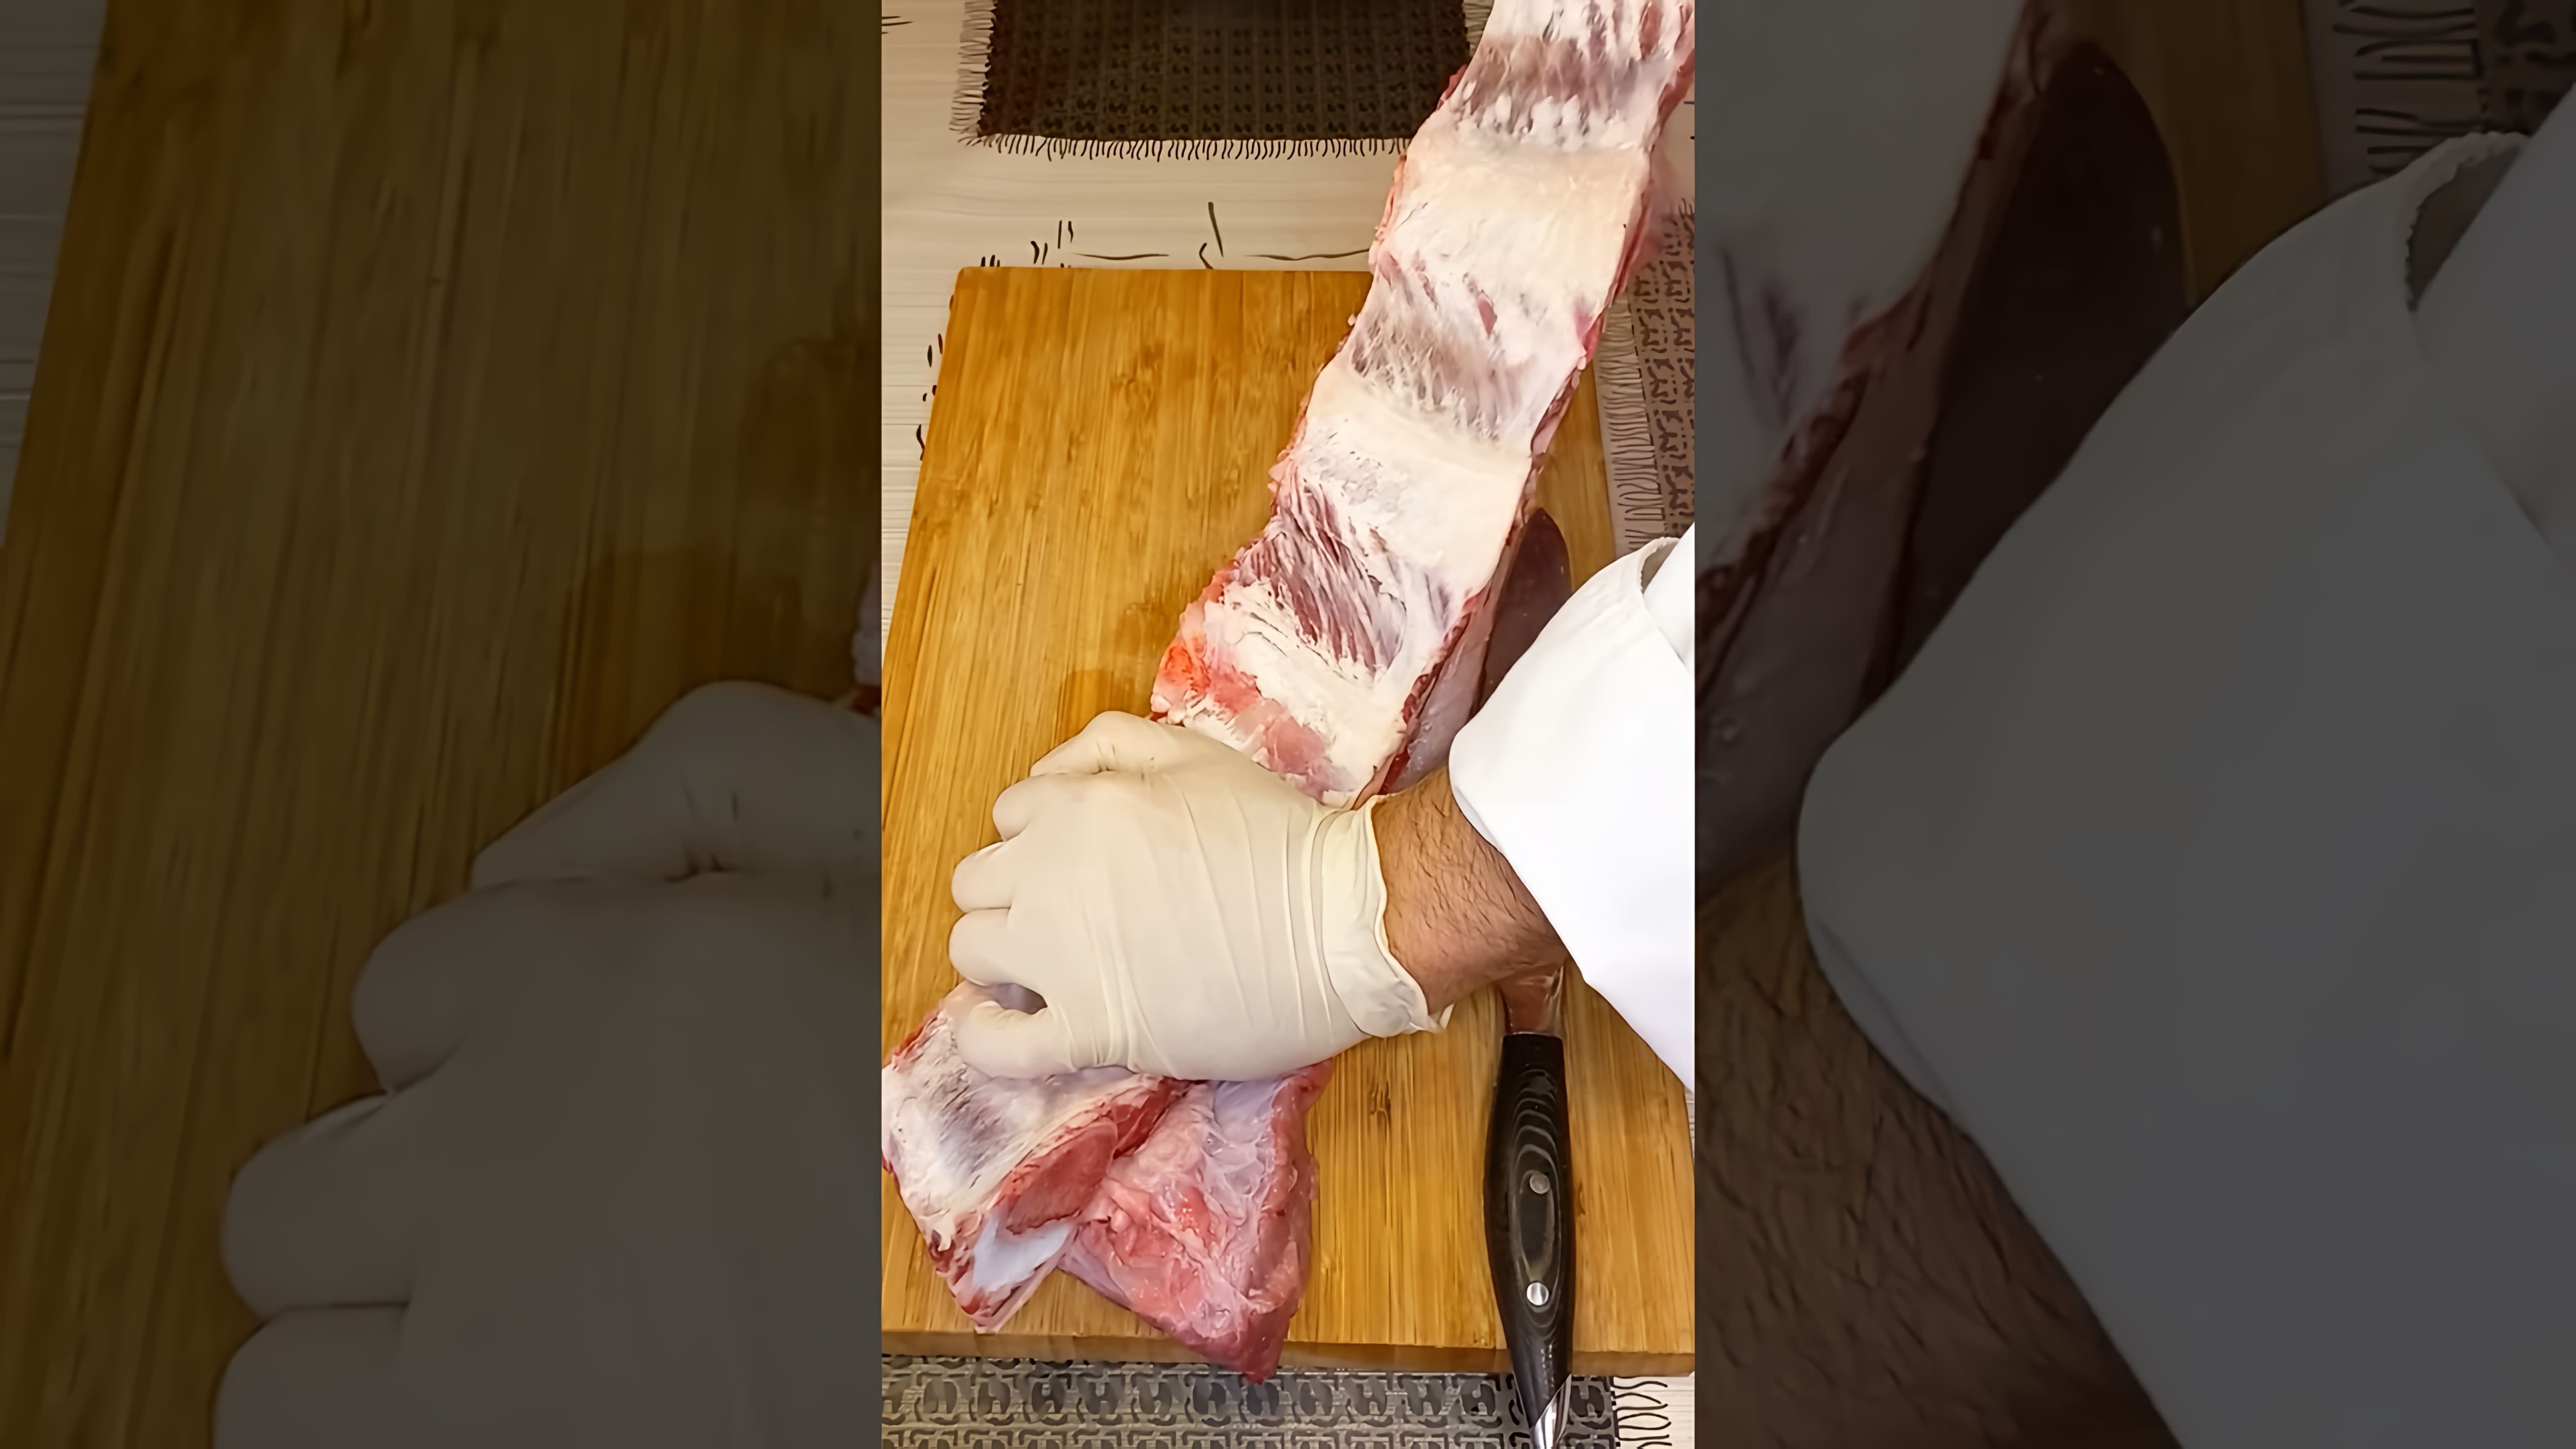 В этом видео демонстрируется процесс приготовления говяжьих ребер с использованием специального маринада